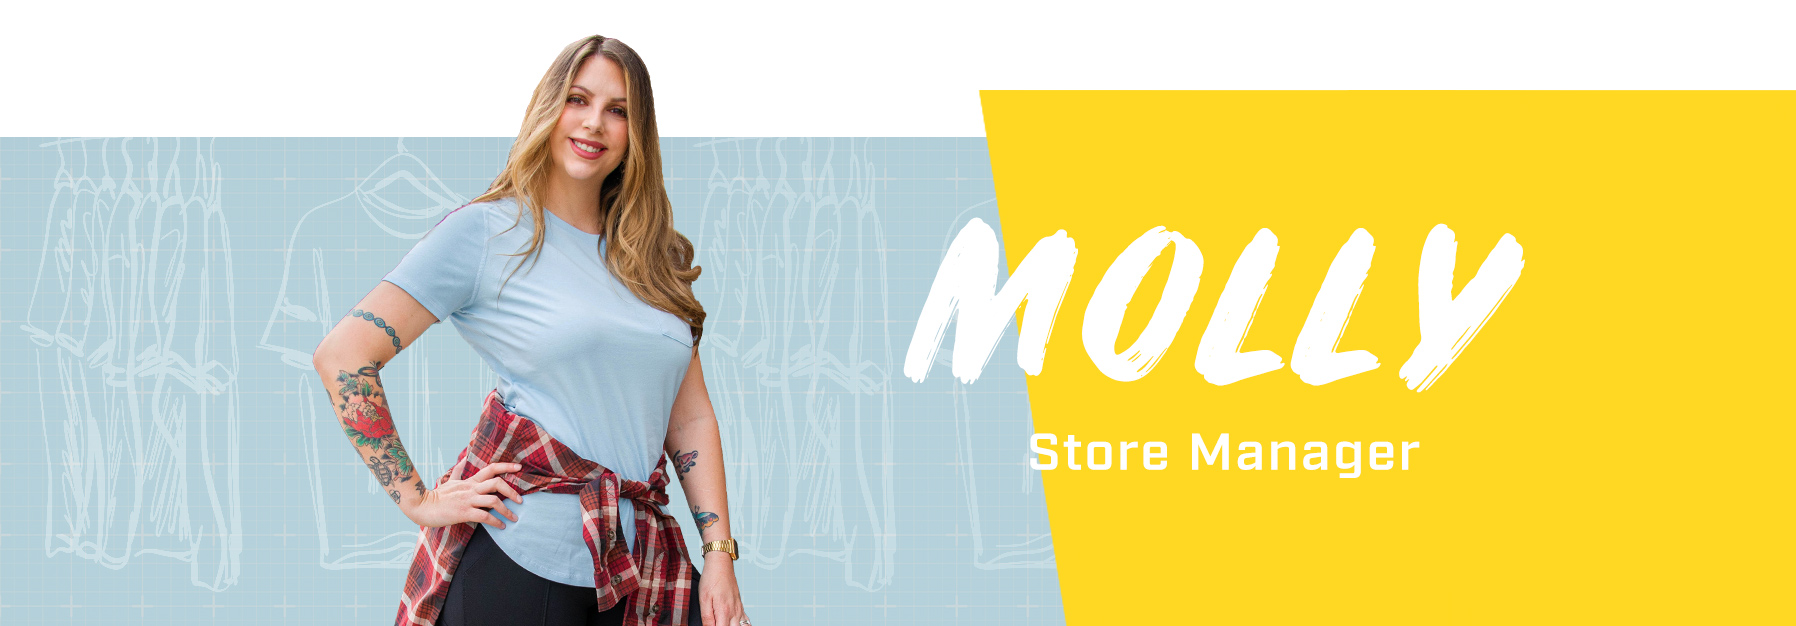 Molly wearing Carhartt leggins and a Carhartt t-shirt